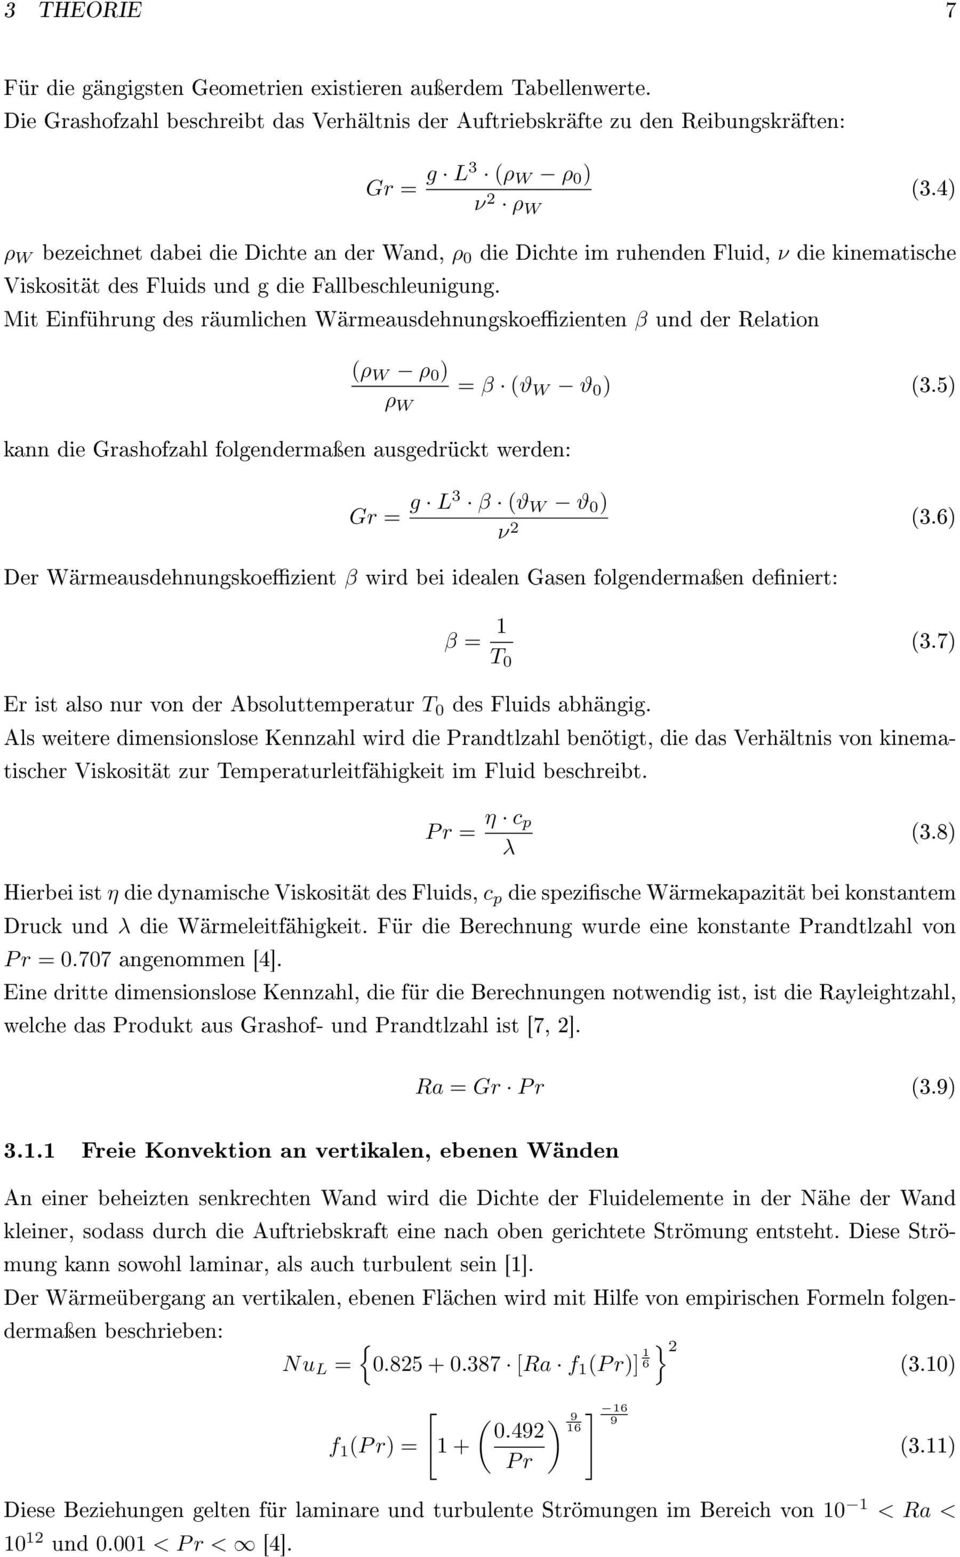 Mit Einführung des räumlichen Wärmeausdehnungskoezienten β und der Relation kann die Grashofzahl folgendermaÿen ausgedrückt werden: (ρ W ρ 0 ) ρ W = β (ϑ W ϑ 0 ) (3.5) Gr = g L3 β (ϑ W ϑ 0 ) ν 2 (3.